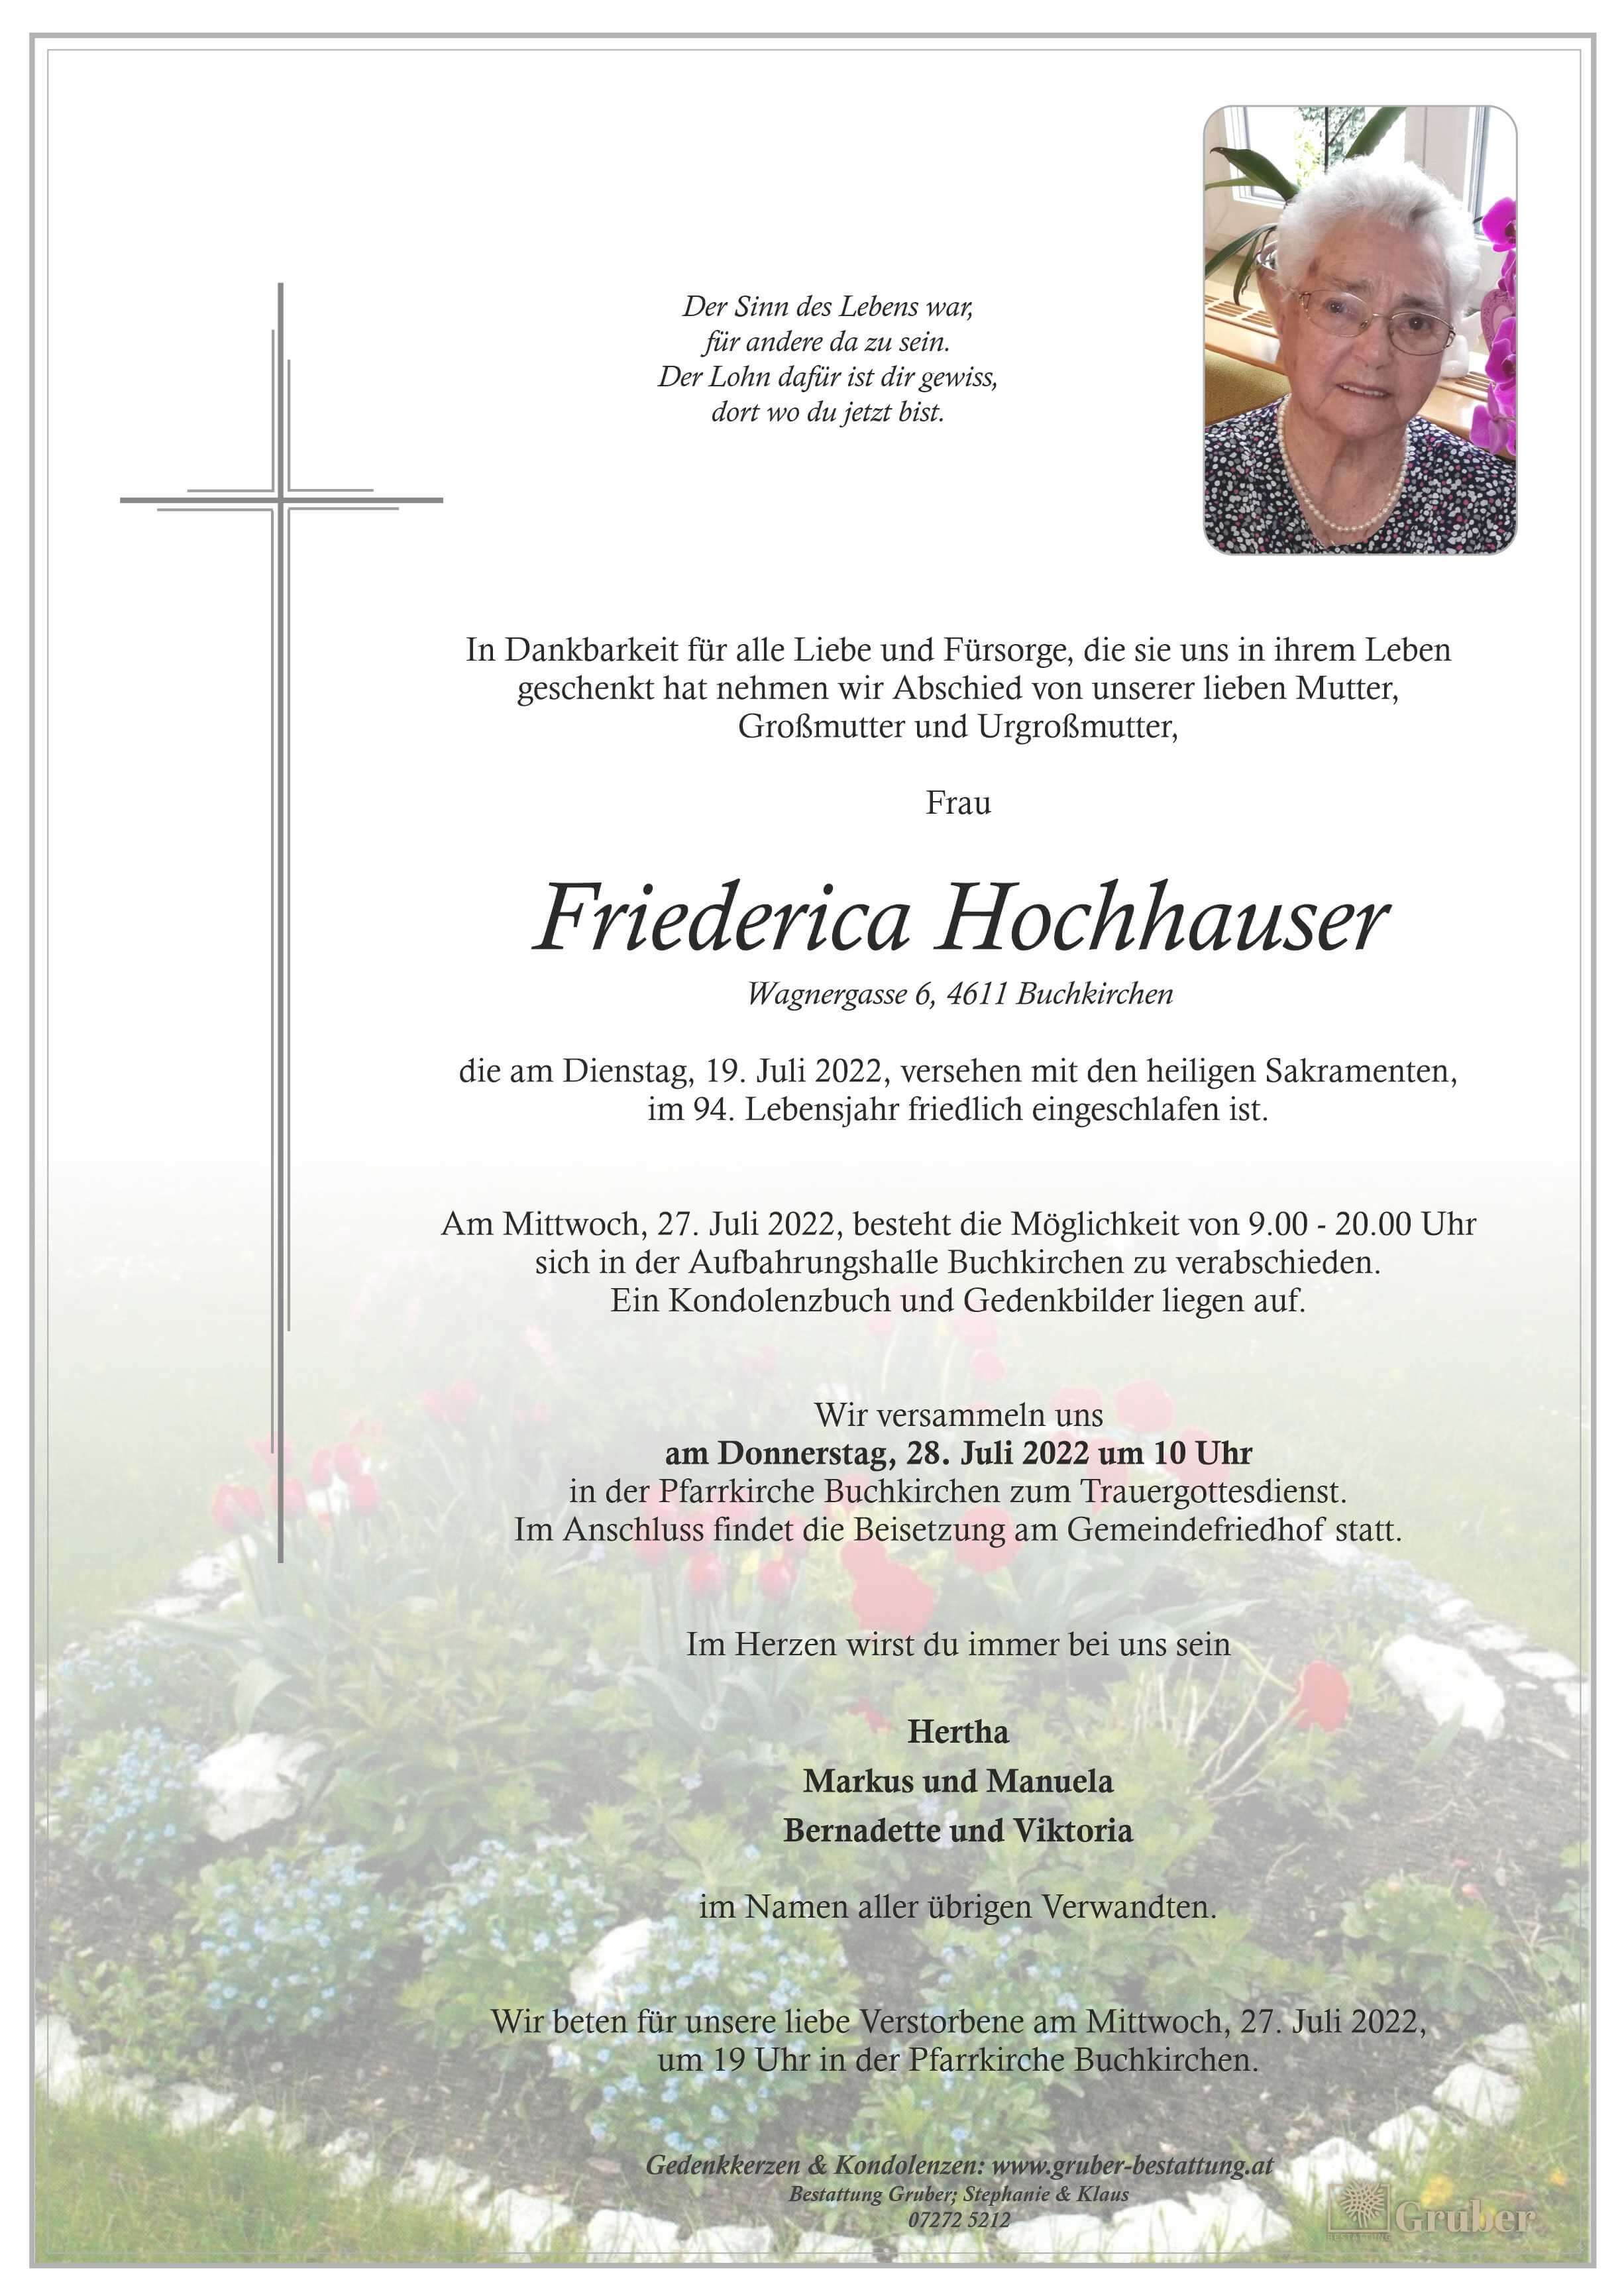 Friederica Hochhauser (Buchkirchen)